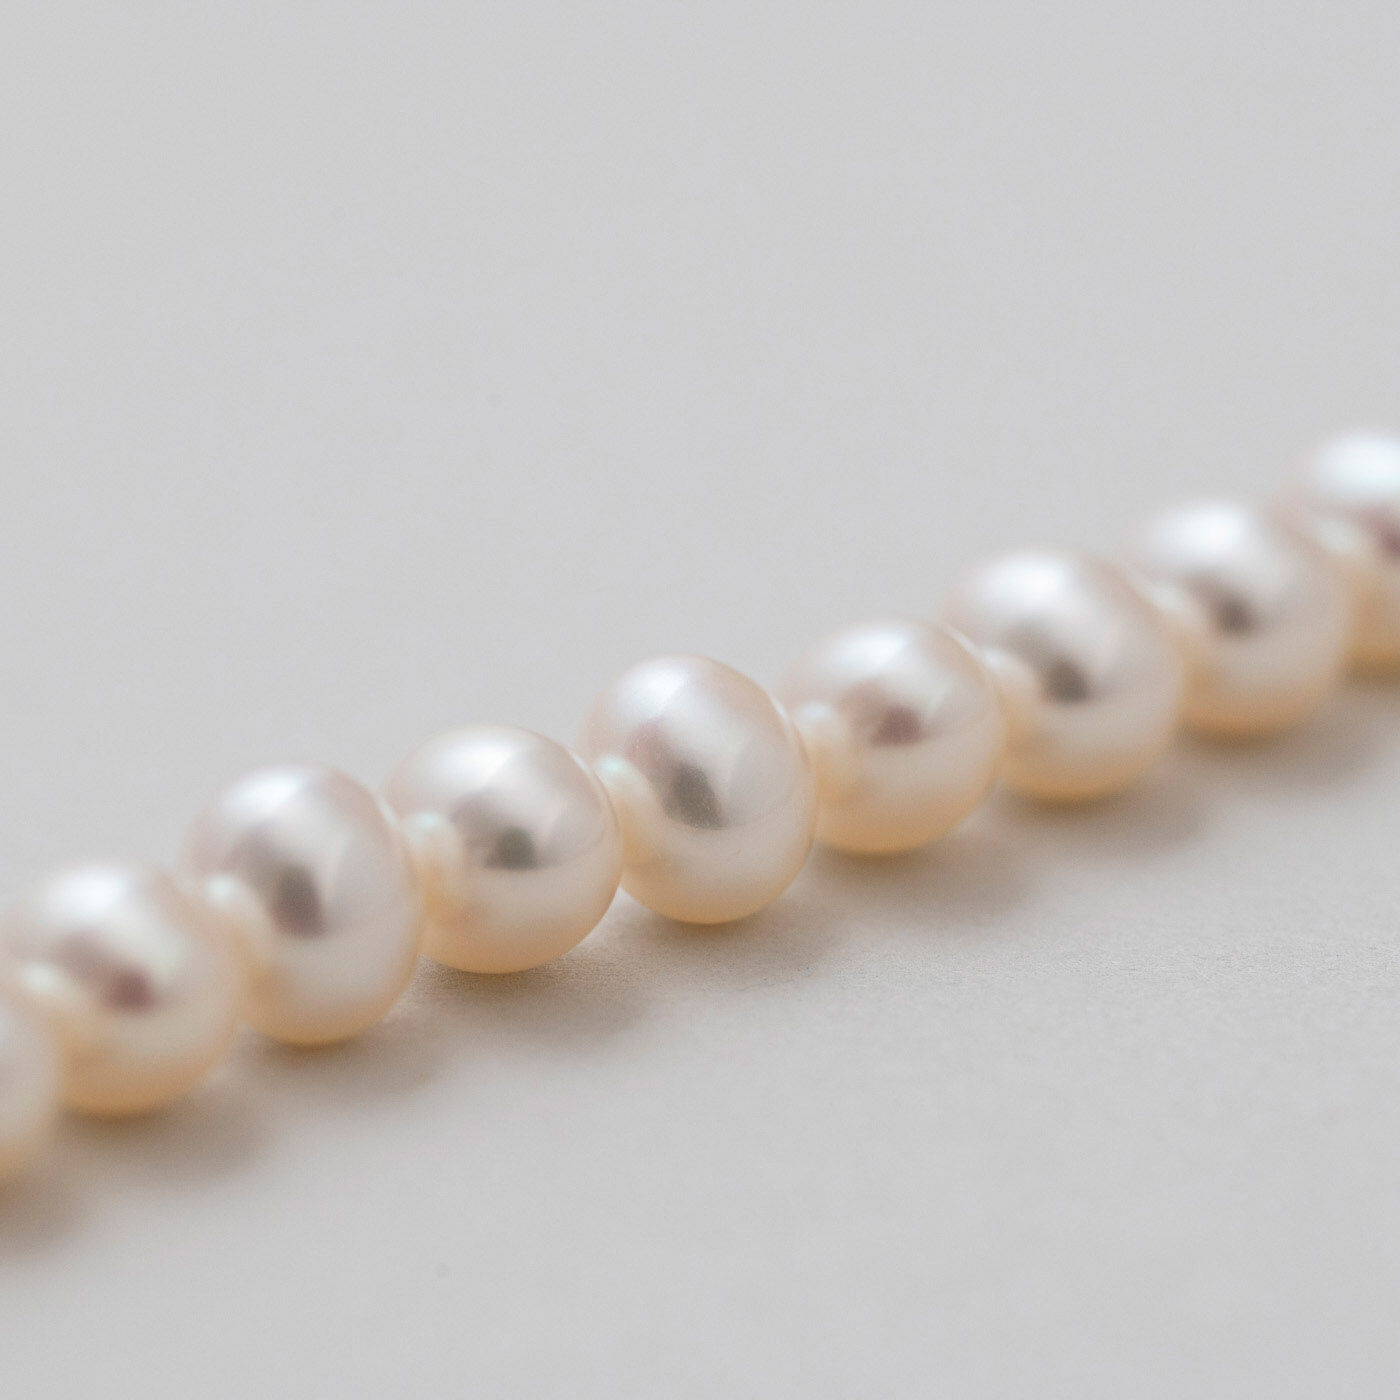 ＆Stories|神戸の老舗真珠メーカーが手掛けた 淡水パールのチェーンネックレス〈シルバー925〉|粒は均一ではなく、大きさや形もさまざま。ひとつずつ違うからこそ、輝き方にも個性が生まれます。